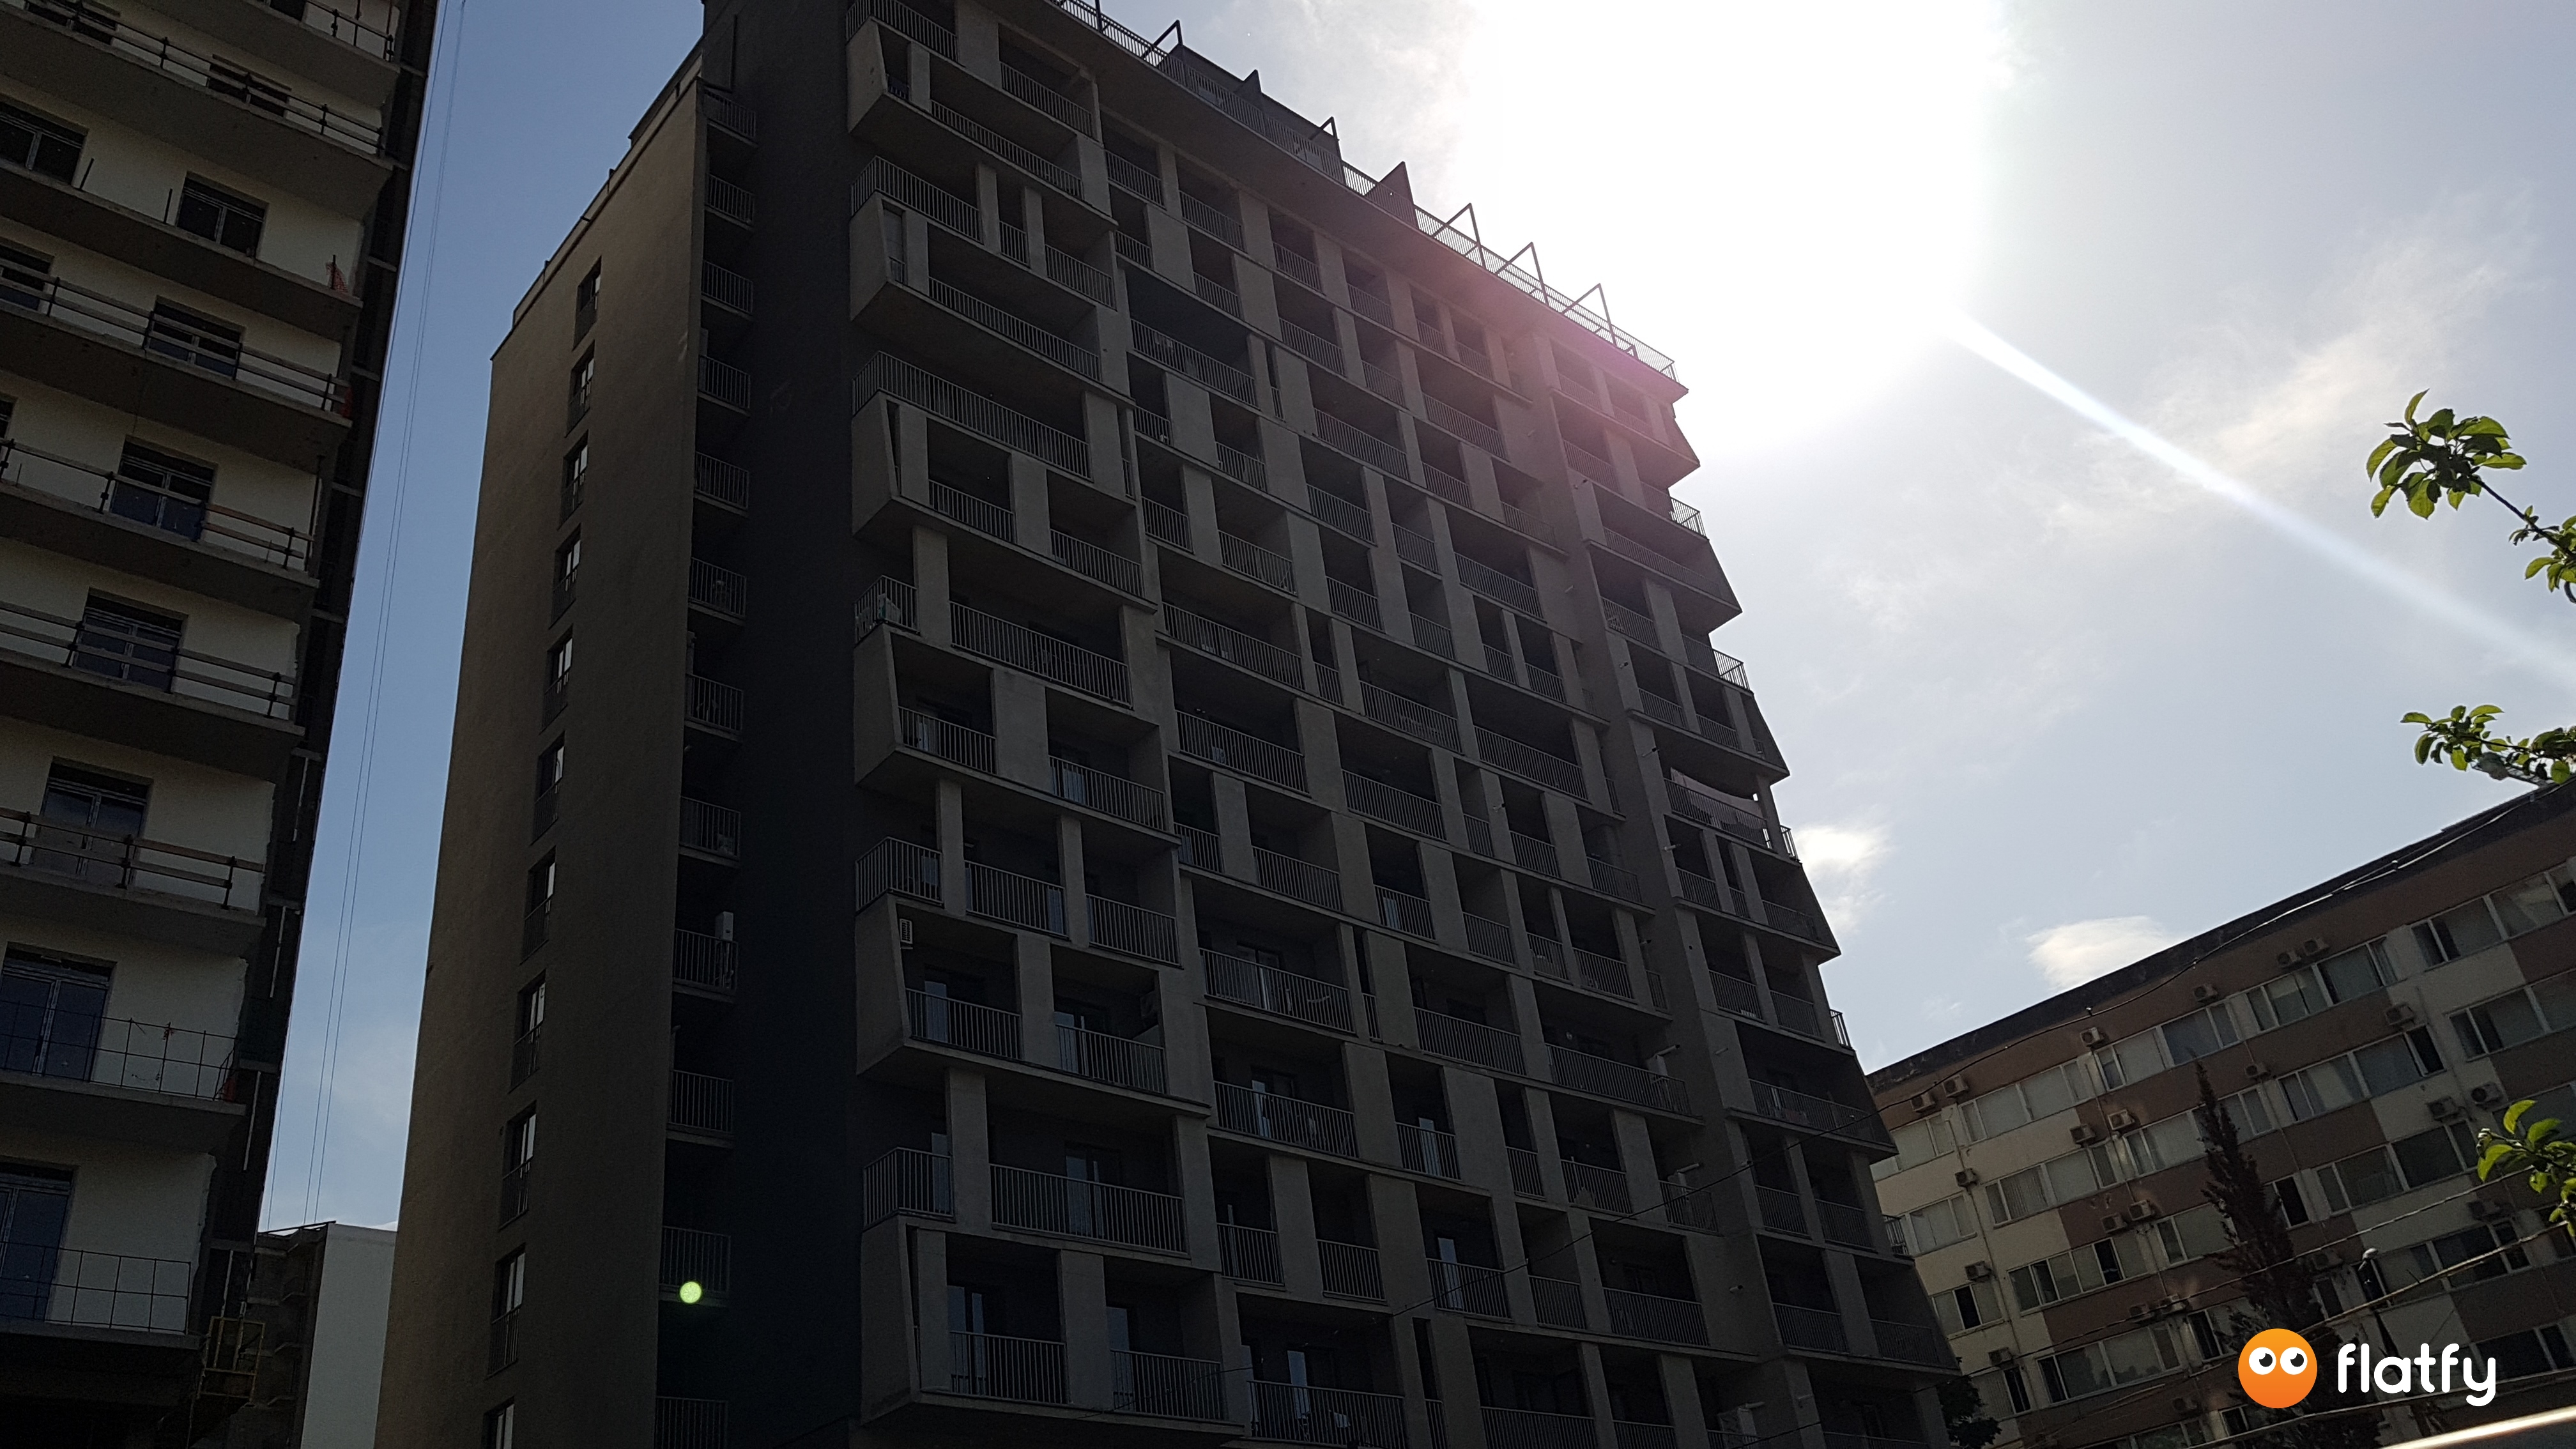 Construction progress House on Politkovskaia 12/2 - Angle 4, May 2019